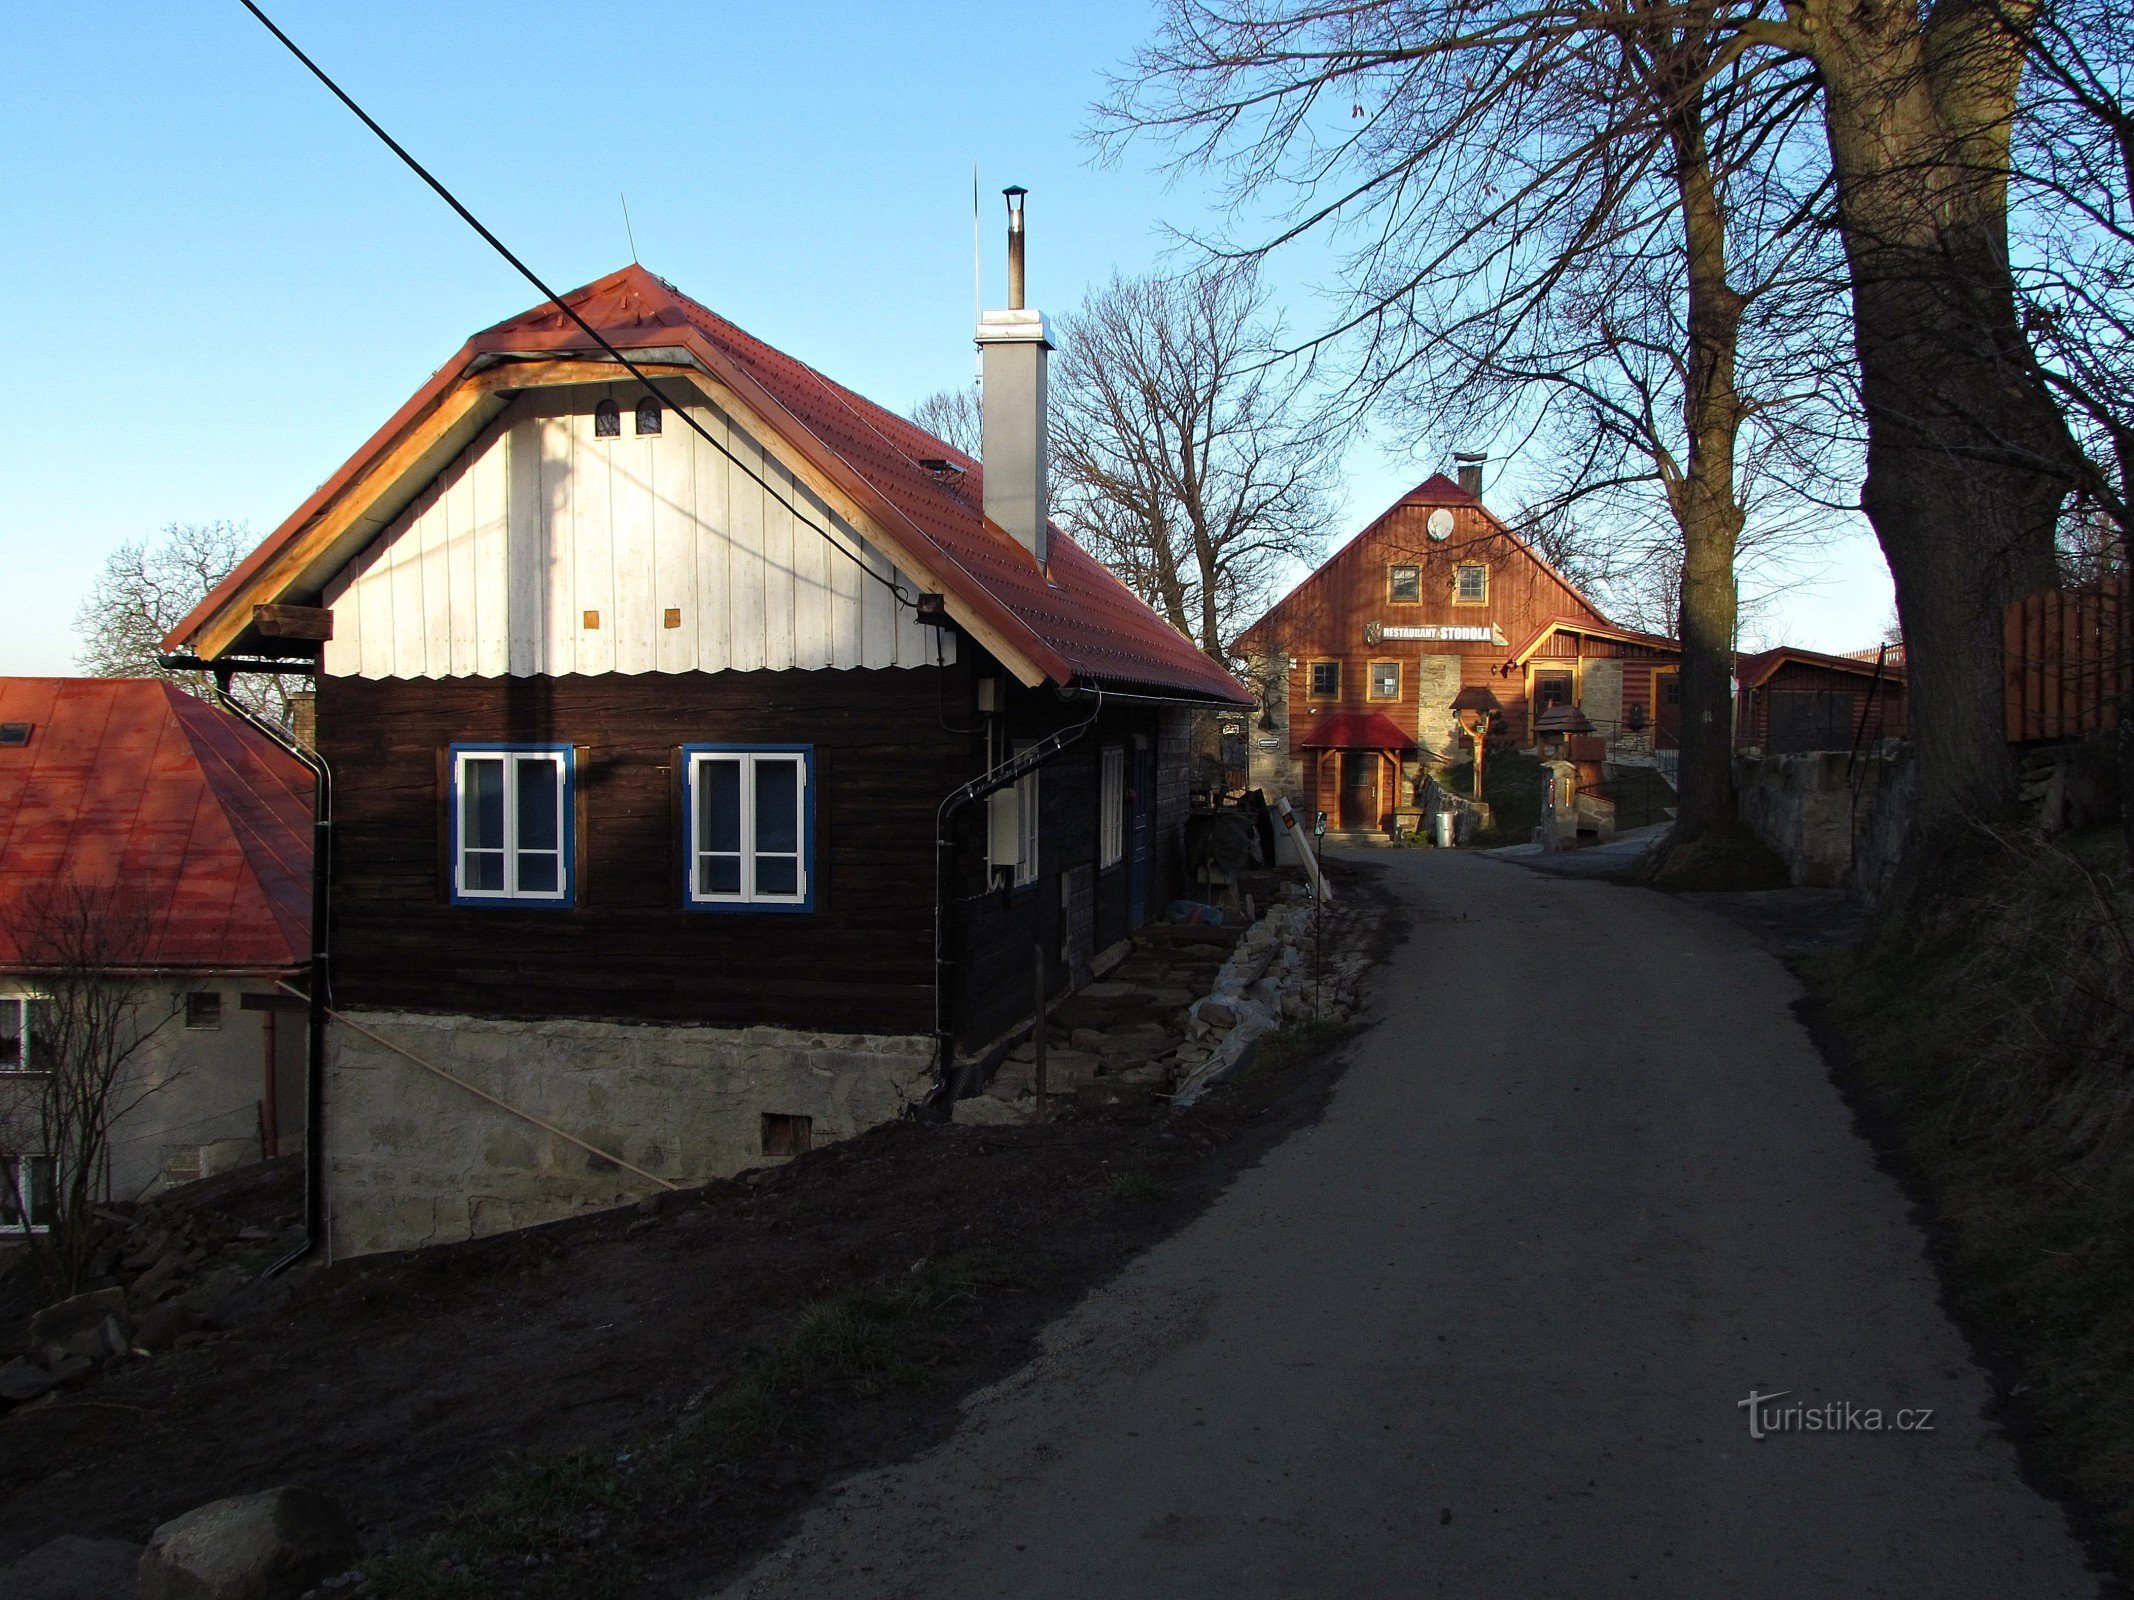 Pulčín - un bellissimo villaggio della Valacchia